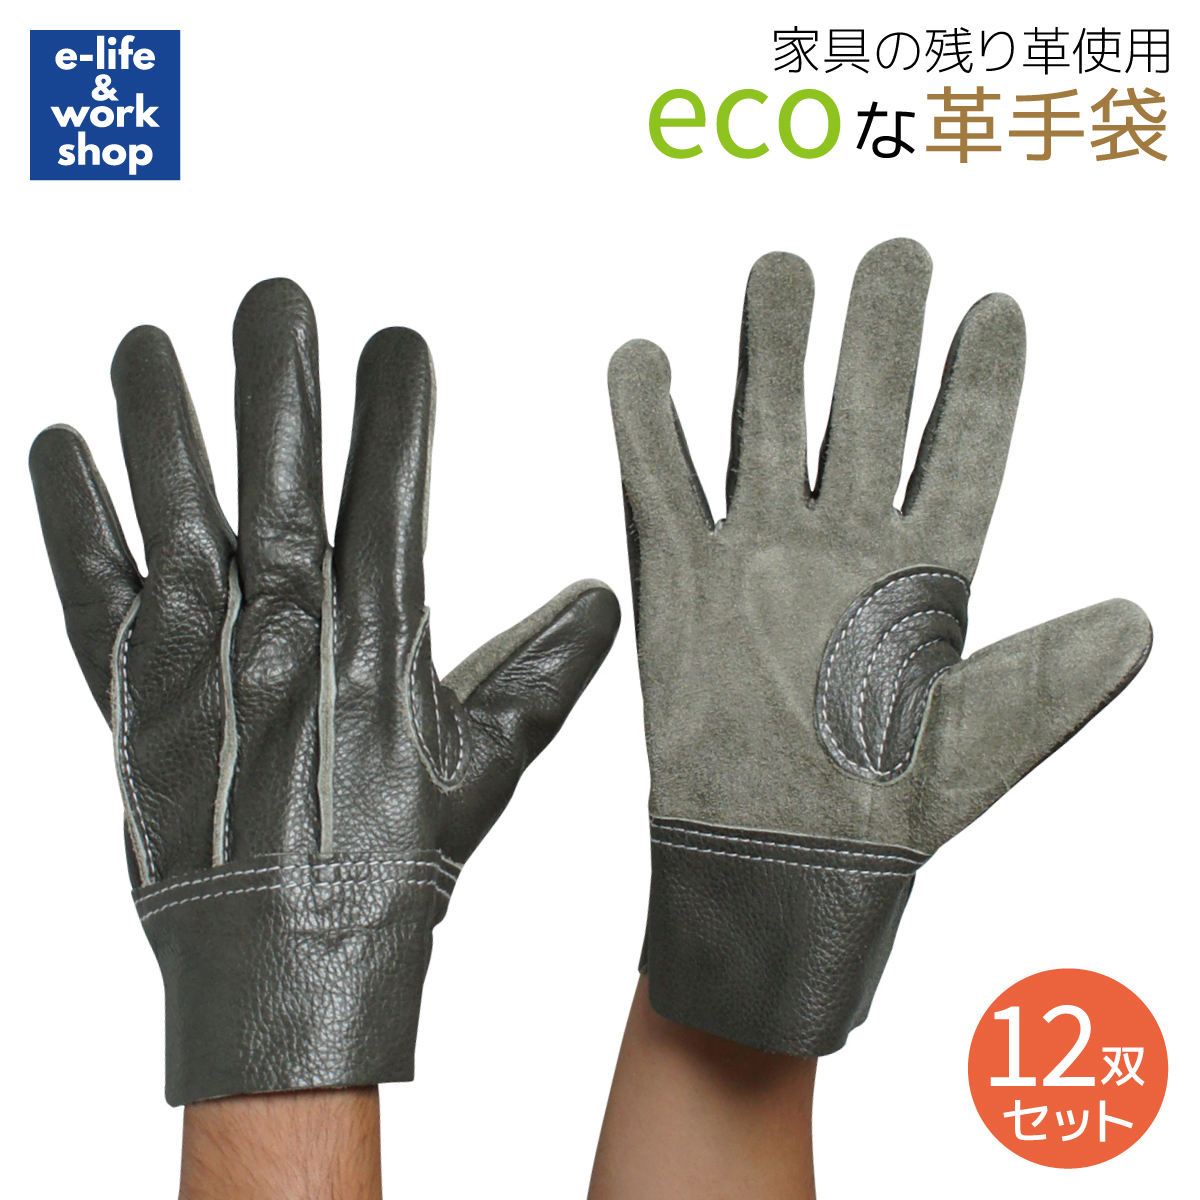 輝く高品質な 作業用革手袋 3双セット